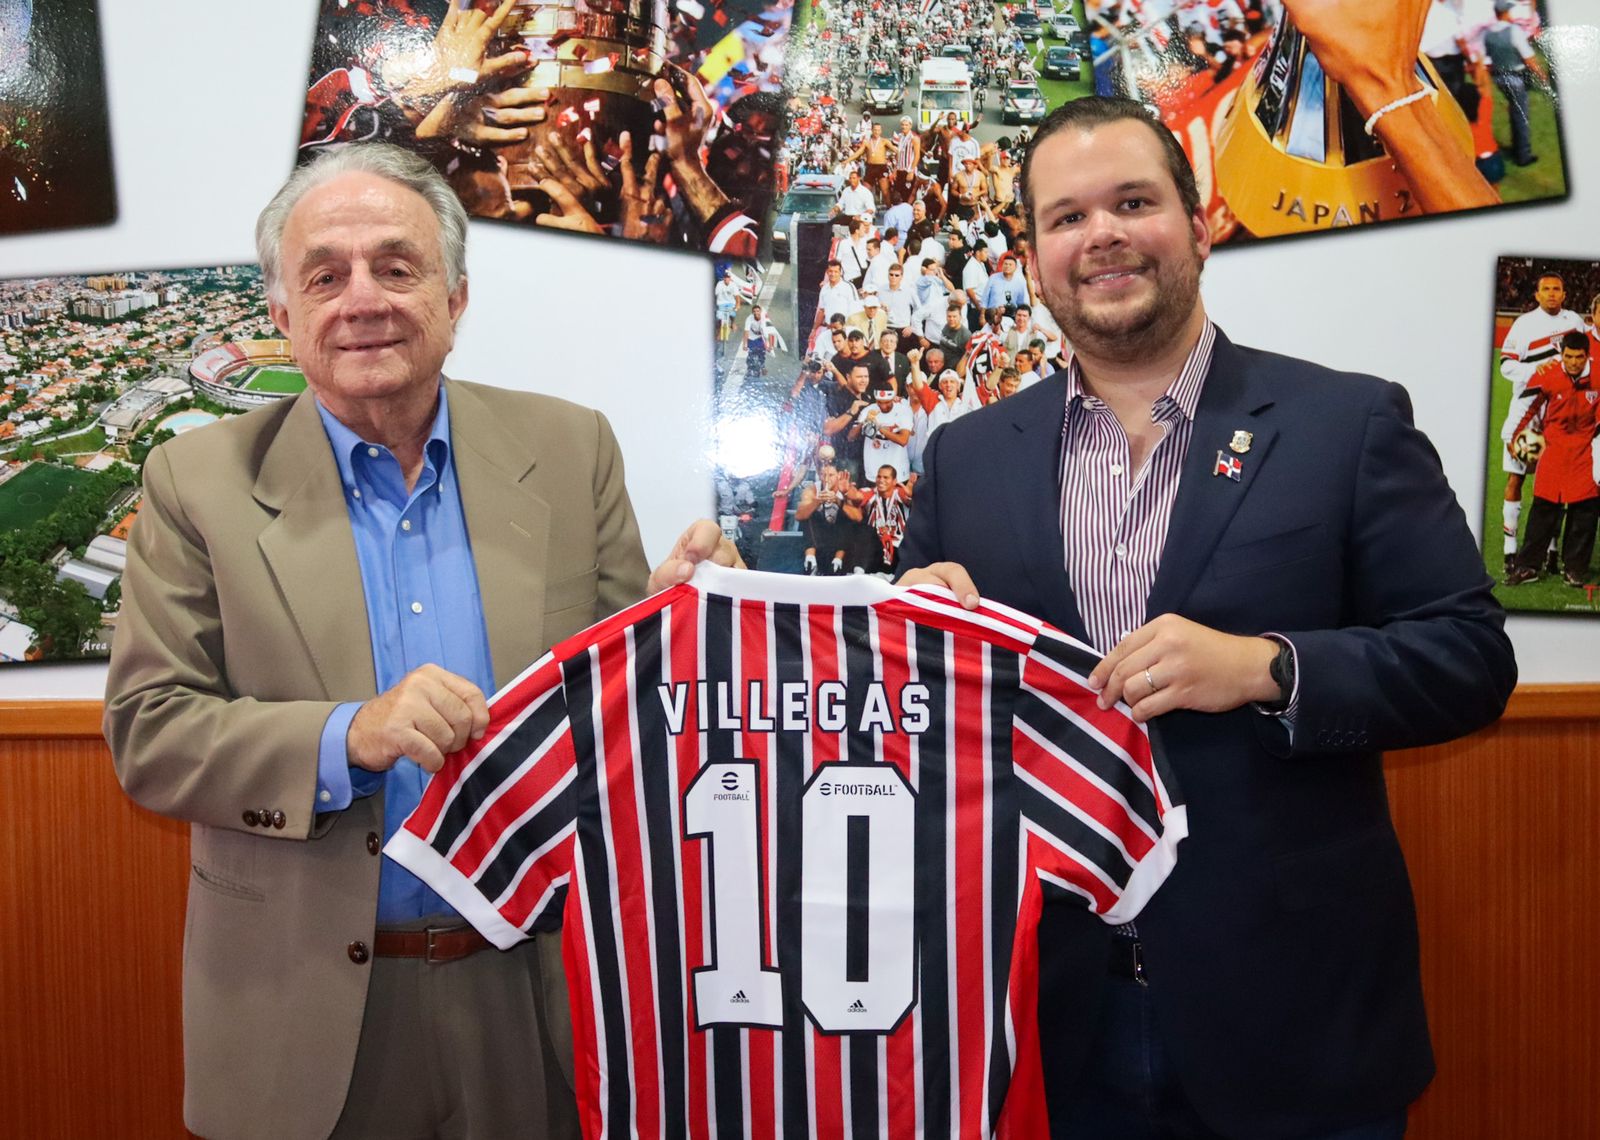 Jorge Villegas busca que equipos de futbol de São Paulo se instalen en República Dominicana